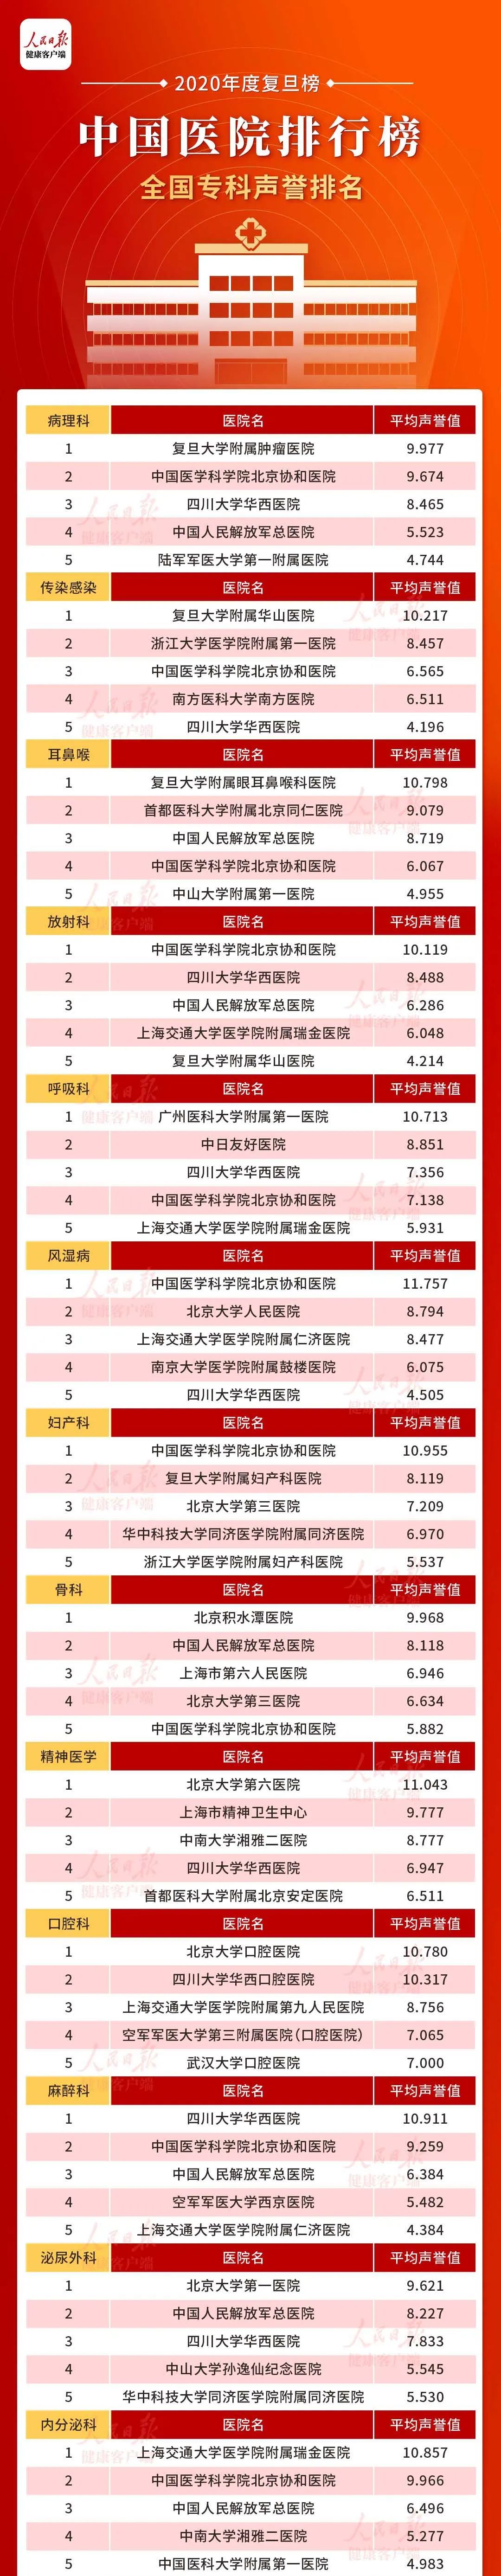 中国杂志排行榜2020_2020年度中国医院排行榜发布!